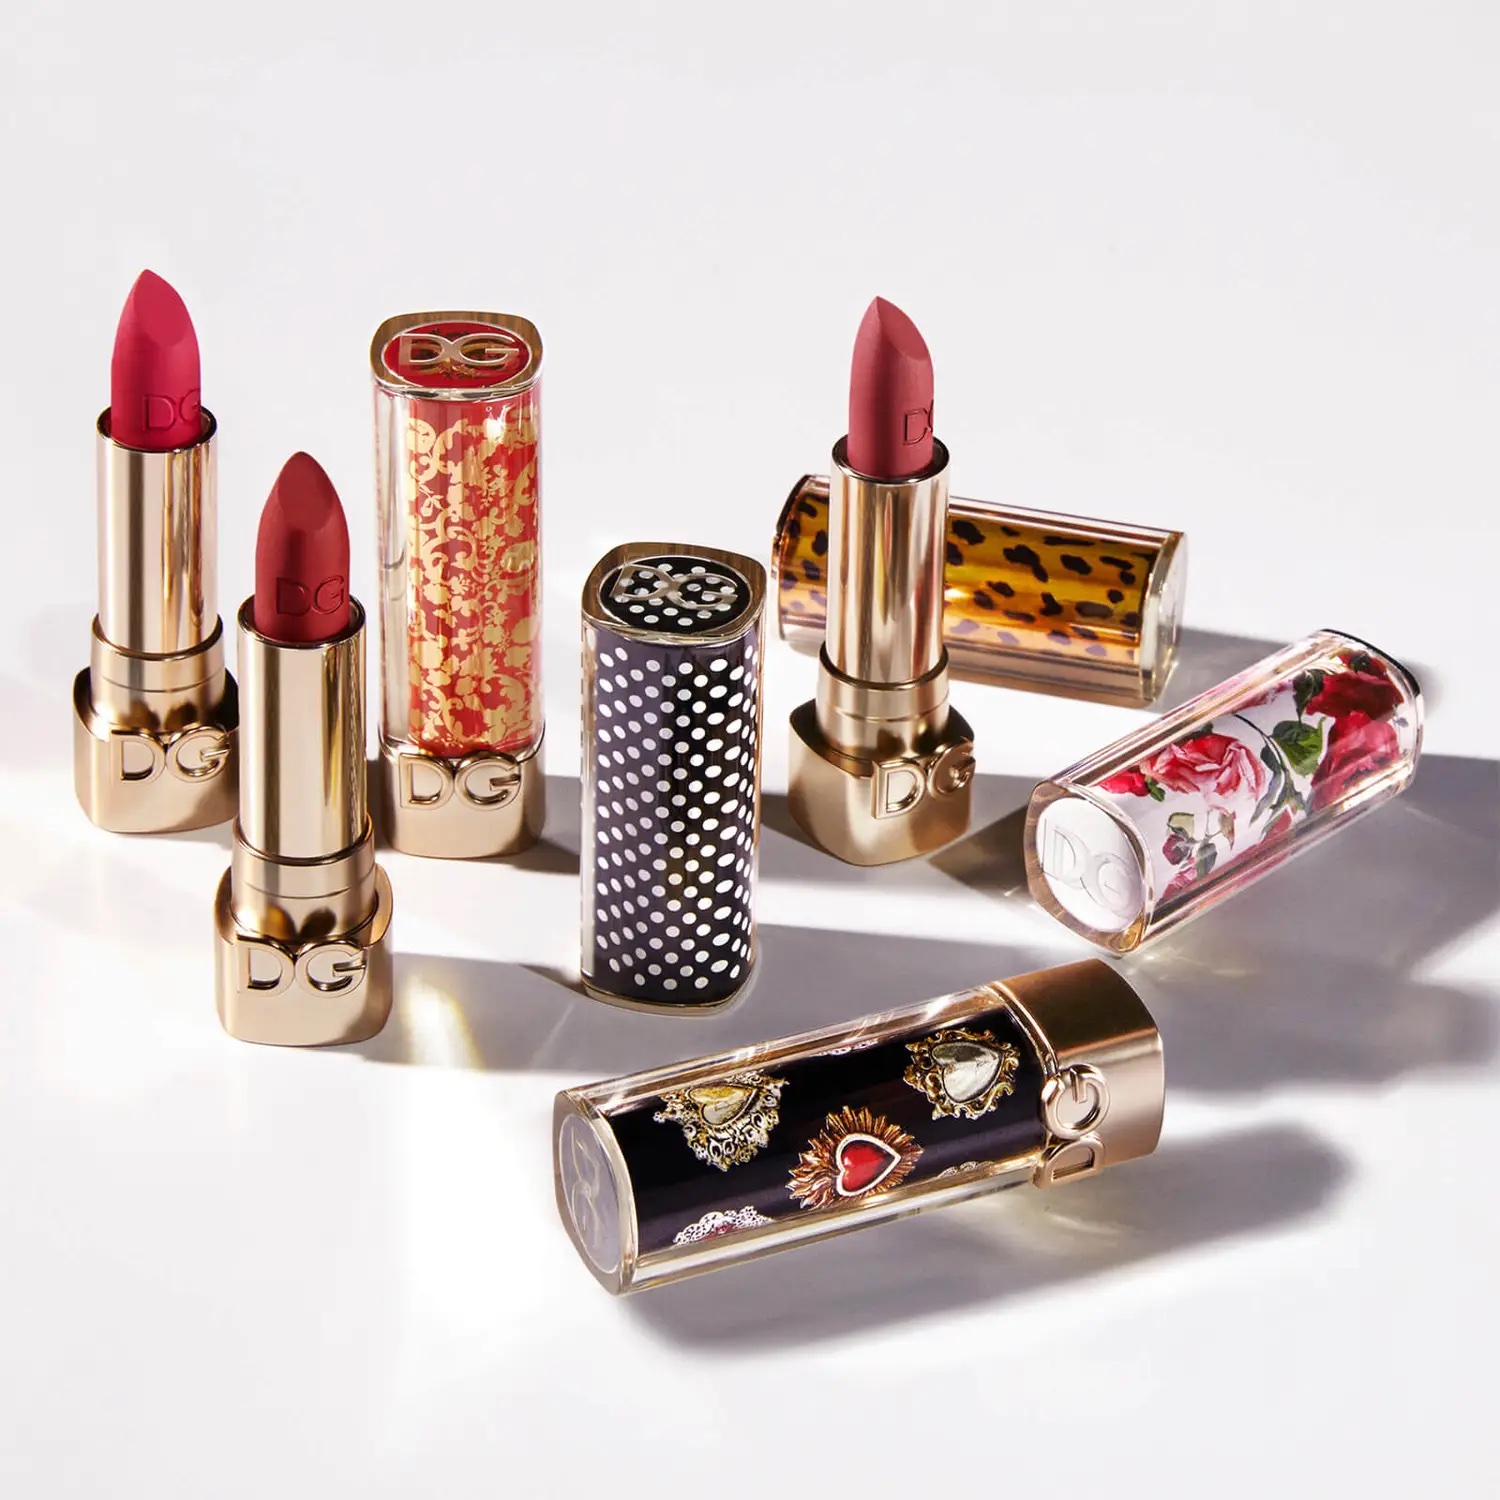 Lipsticks D&G